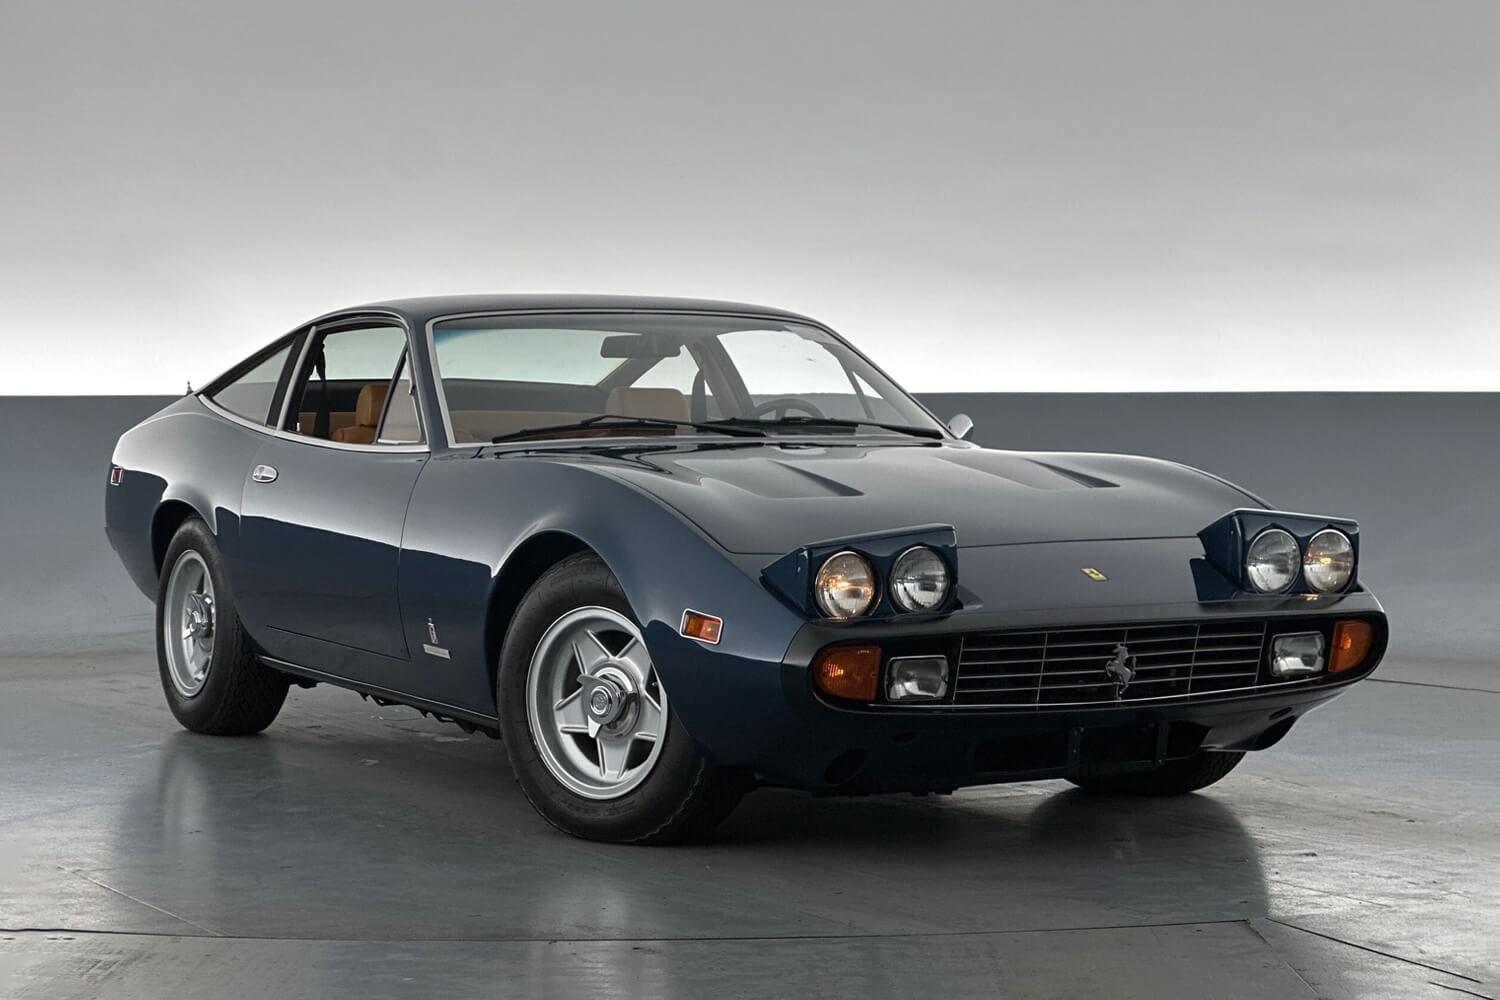 View a blue 1972 Ferrari 365 GTC 4 available via auction.